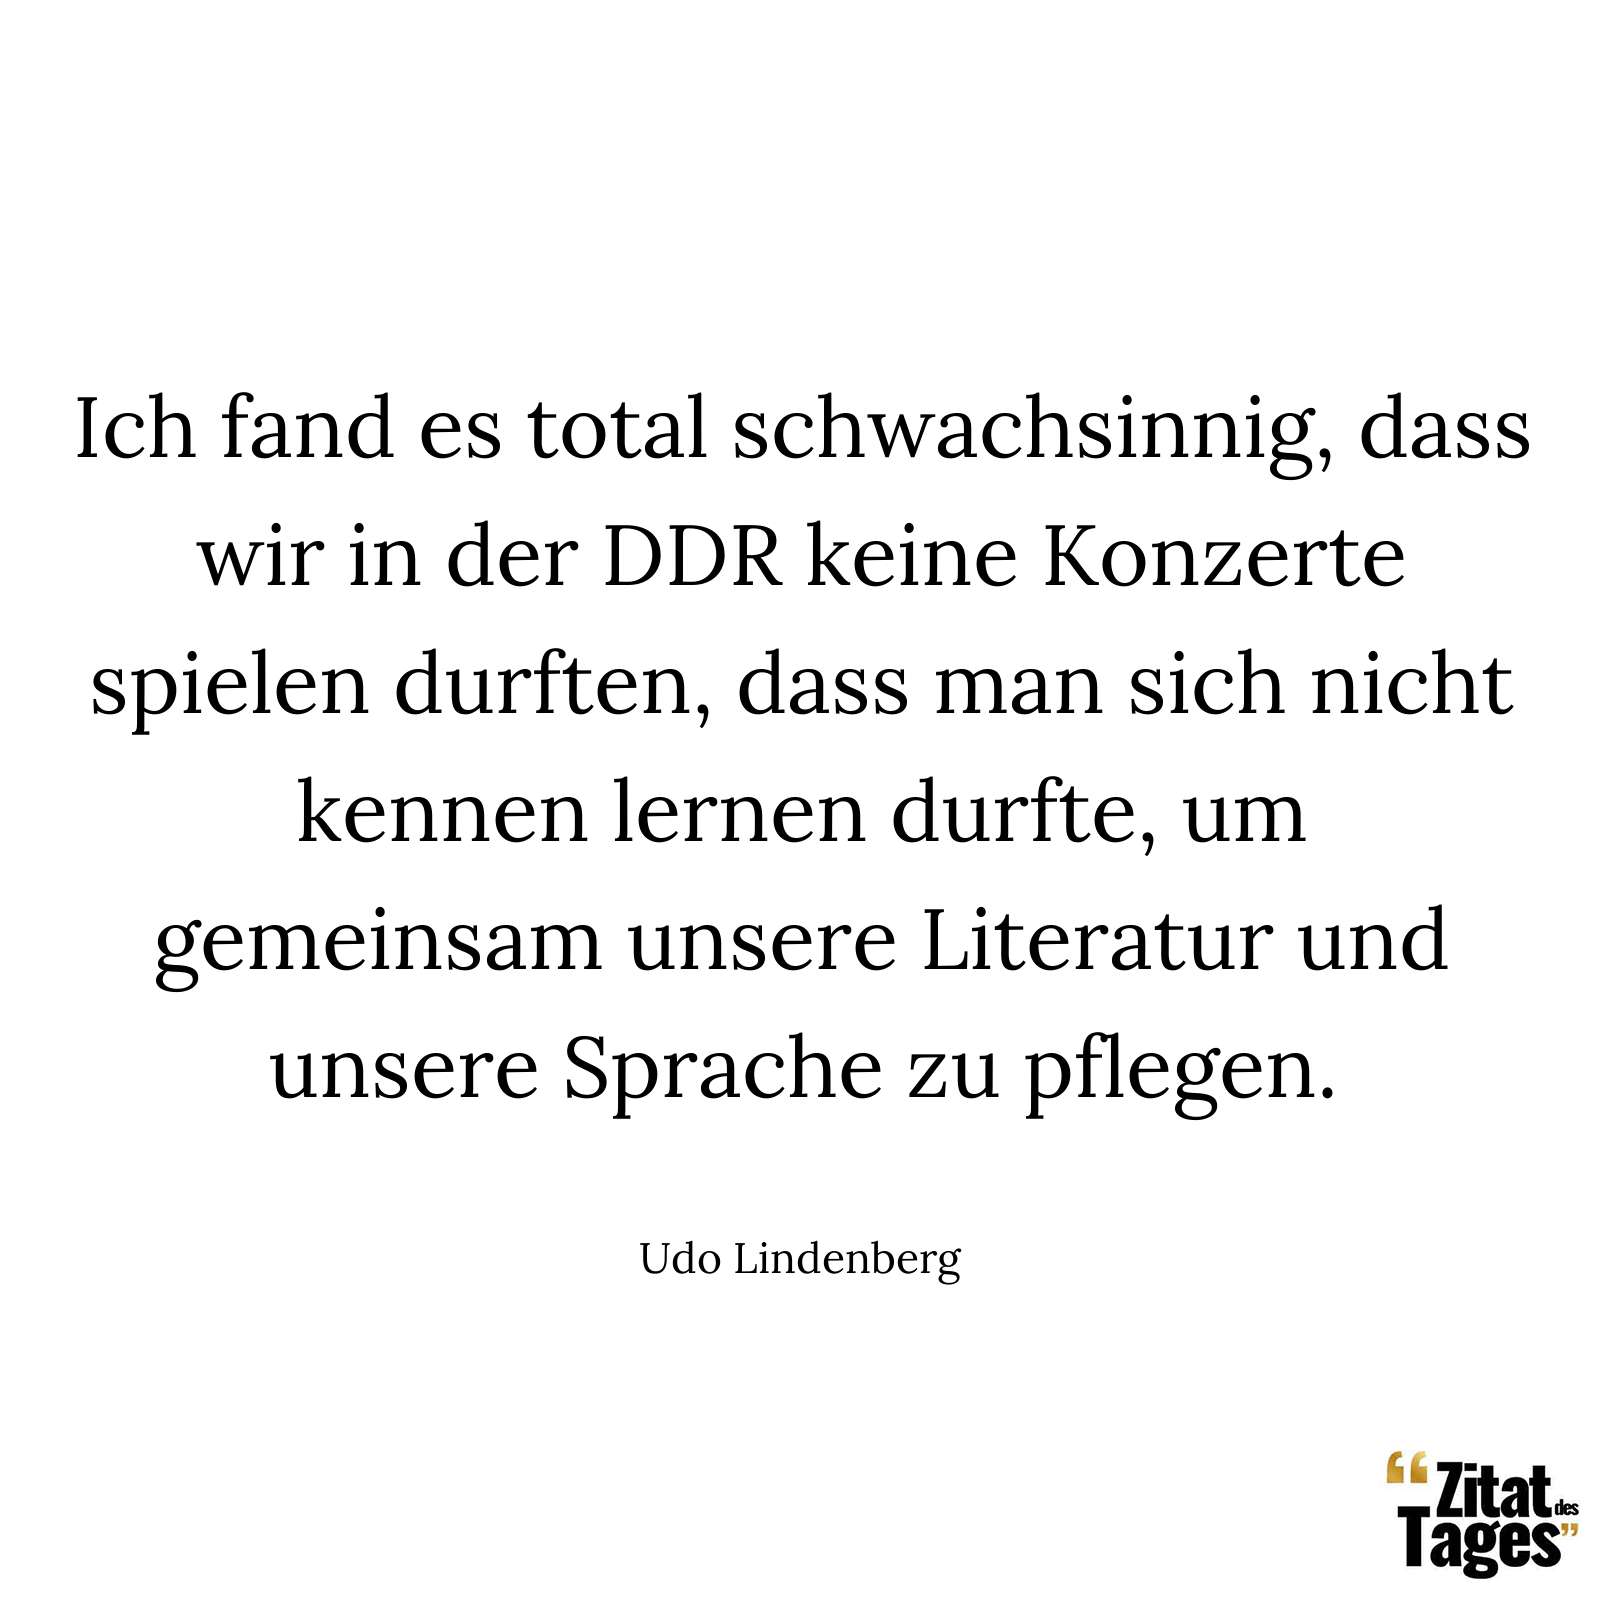 Ich fand es total schwachsinnig, dass wir in der DDR keine Konzerte spielen durften, dass man sich nicht kennen lernen durfte, um gemeinsam unsere Literatur und unsere Sprache zu pflegen. - Udo Lindenberg